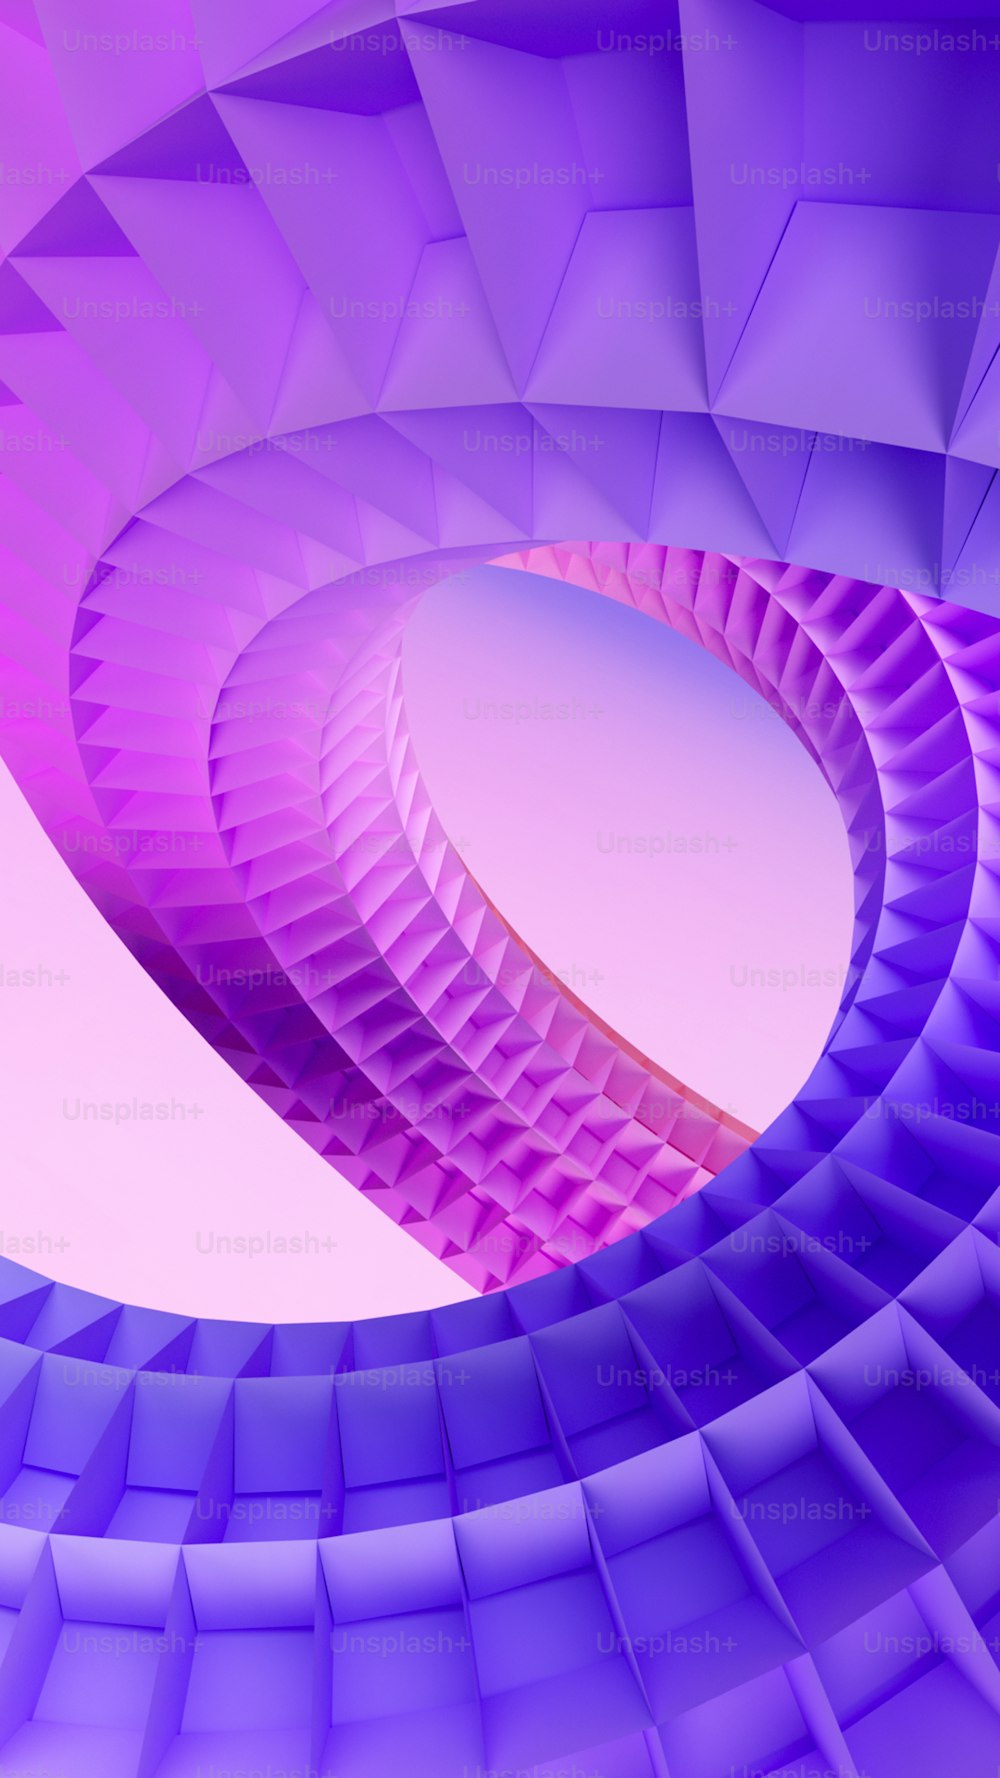 uma imagem abstrata de uma estrutura em forma de espiral